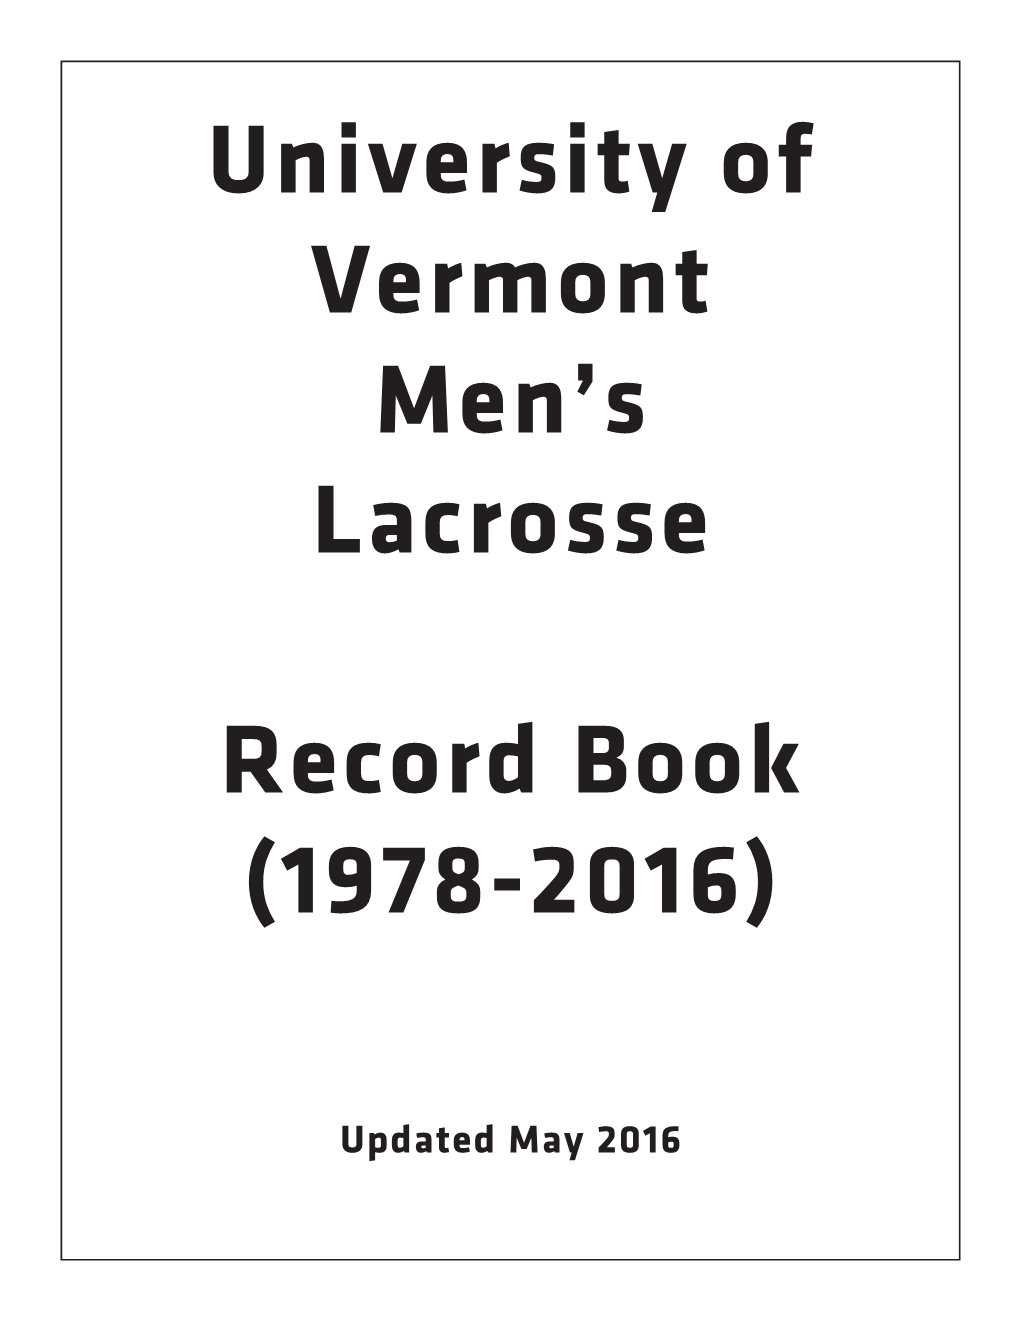 University of Vermont Men's Lacrosse Record Book